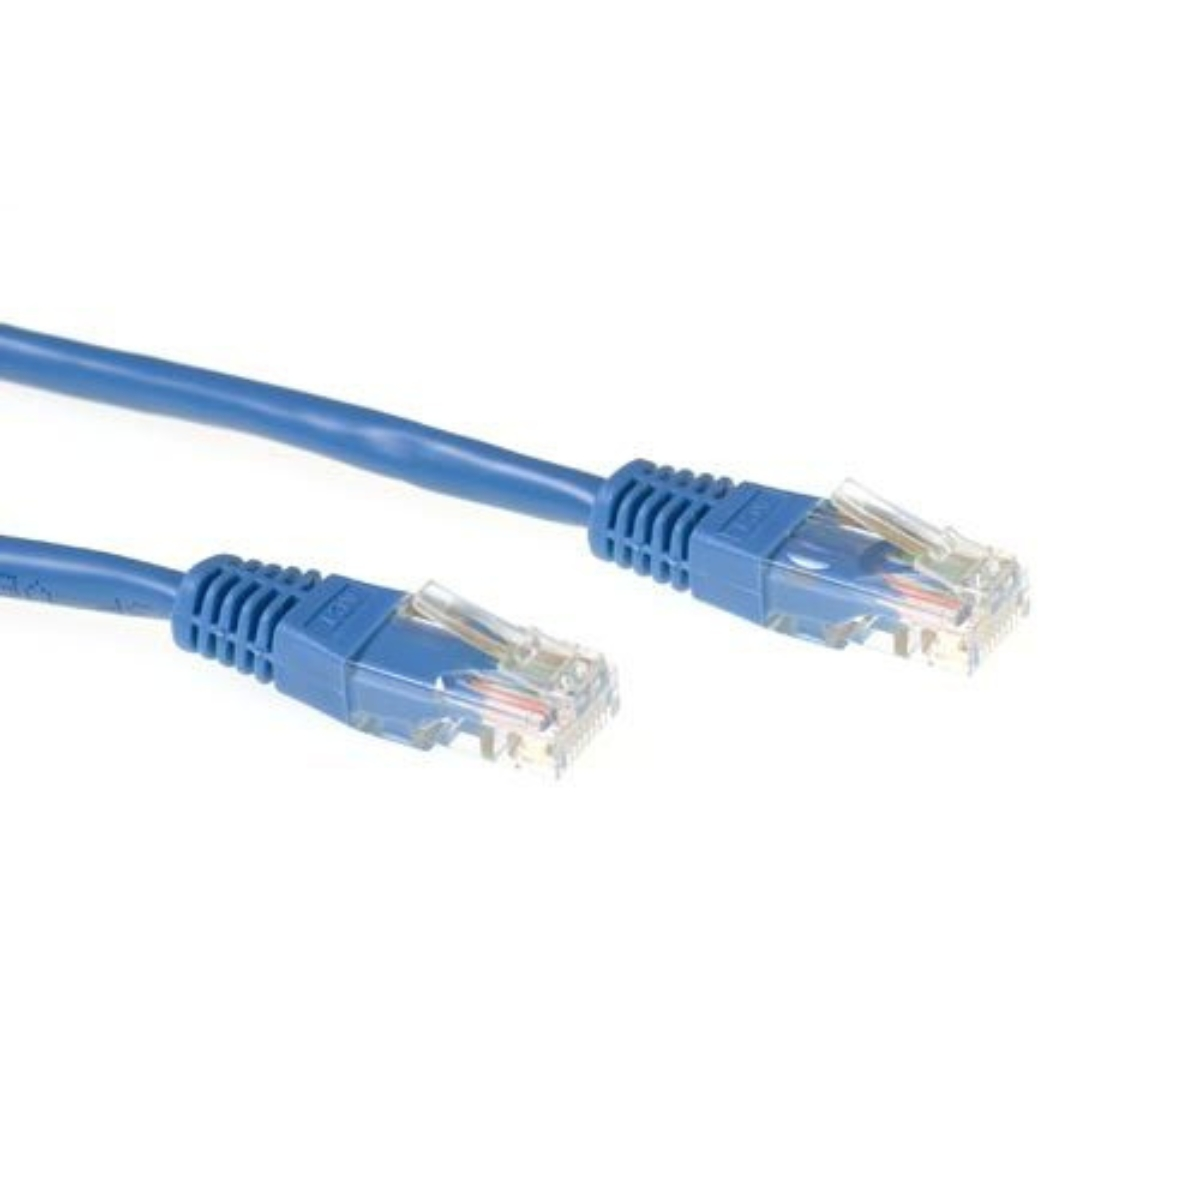 1 IB5601 m Netzwerkkabel, U/UTP CAT5E, ACT